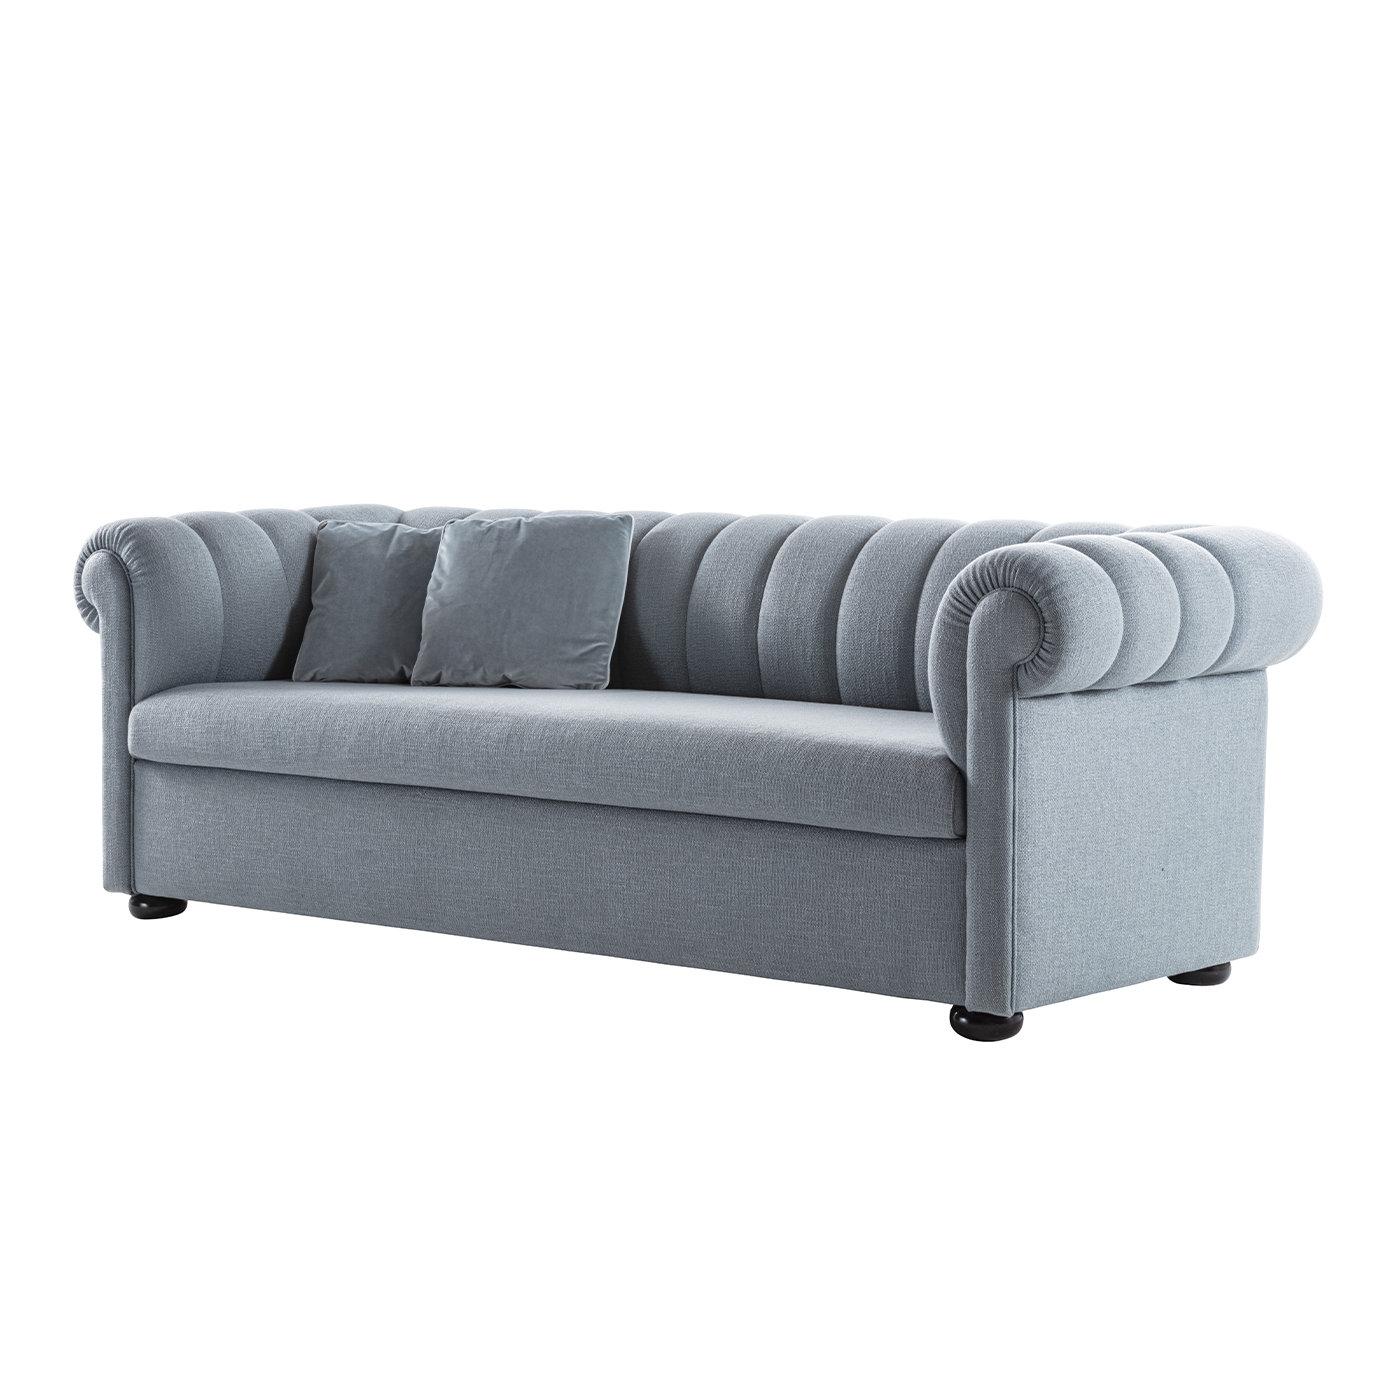 Este sofá cama ejemplifica su clave de interpretación personal de los muebles clásicos. El armazón de nogal macizo está generosamente acolchado con espuma de poliuretano multidensidad y tapizado en suave tela gris; el respaldo está animado por un